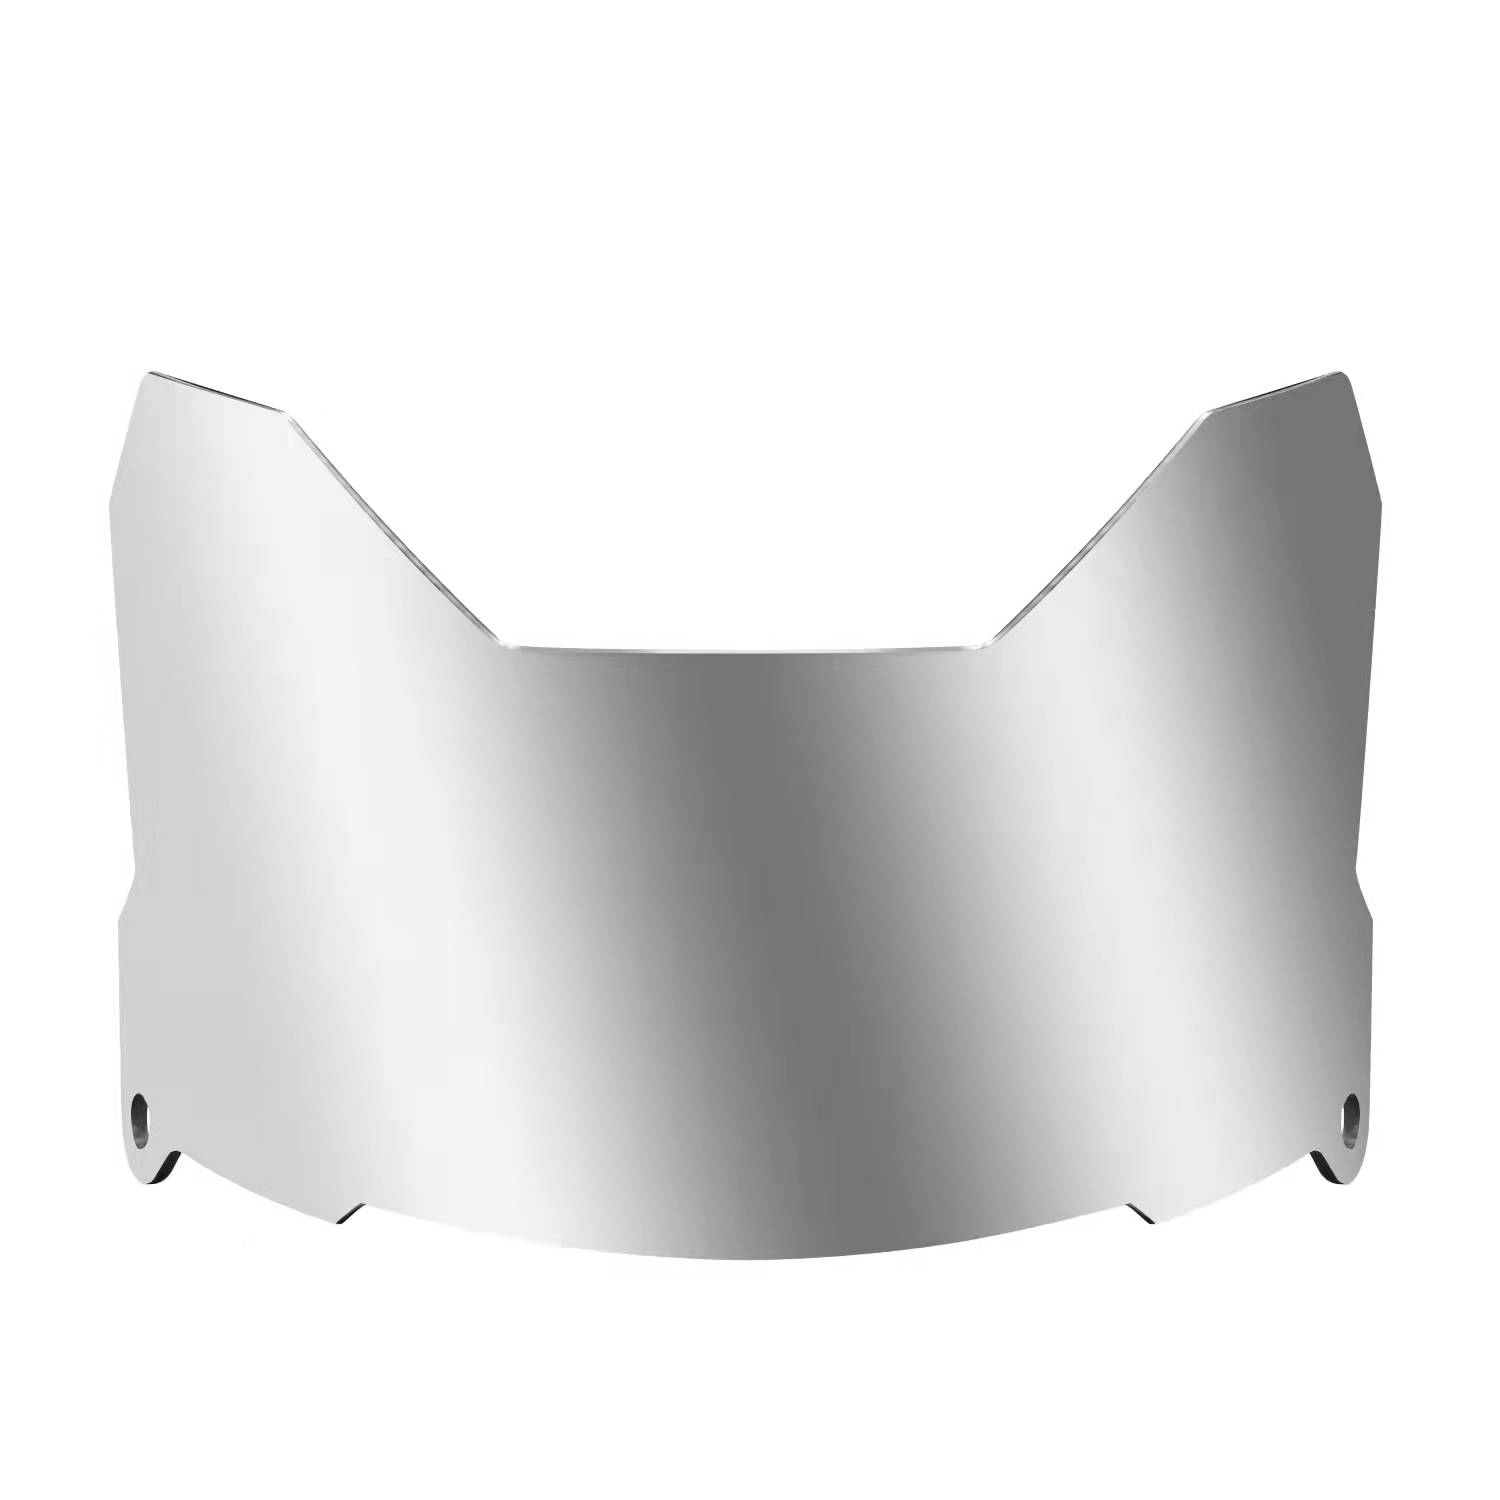 Silver Chromeplate American Football Visor For Large Heads